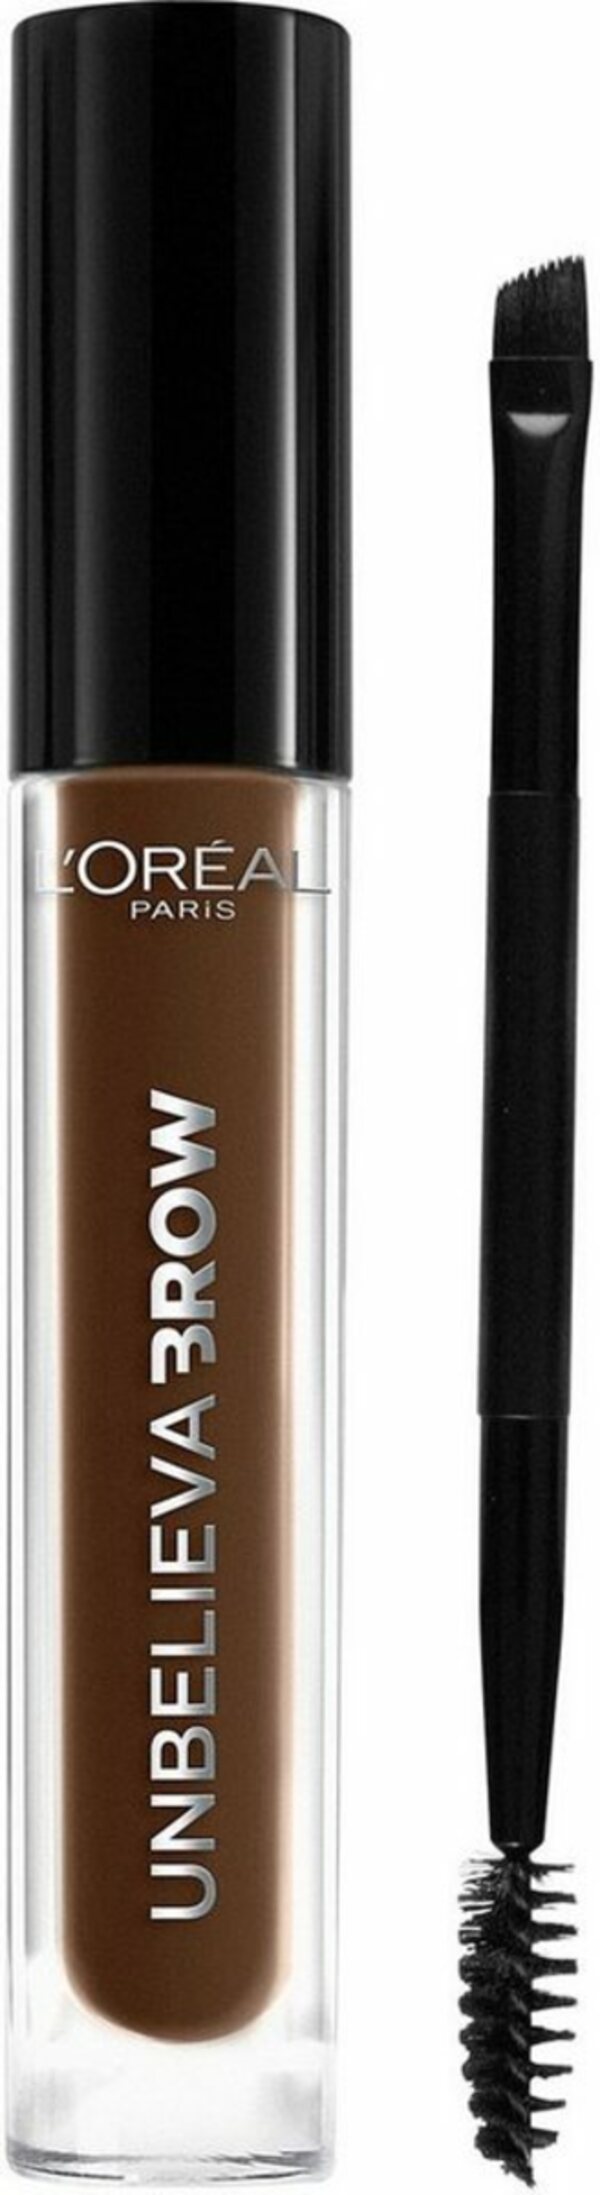 Bild 1 von L'ORÉAL PARIS Augenbrauen-Gel Unbelieva Brow, mit unterschiedlichen Applikatoren, wischfest, Augen-Make-Up